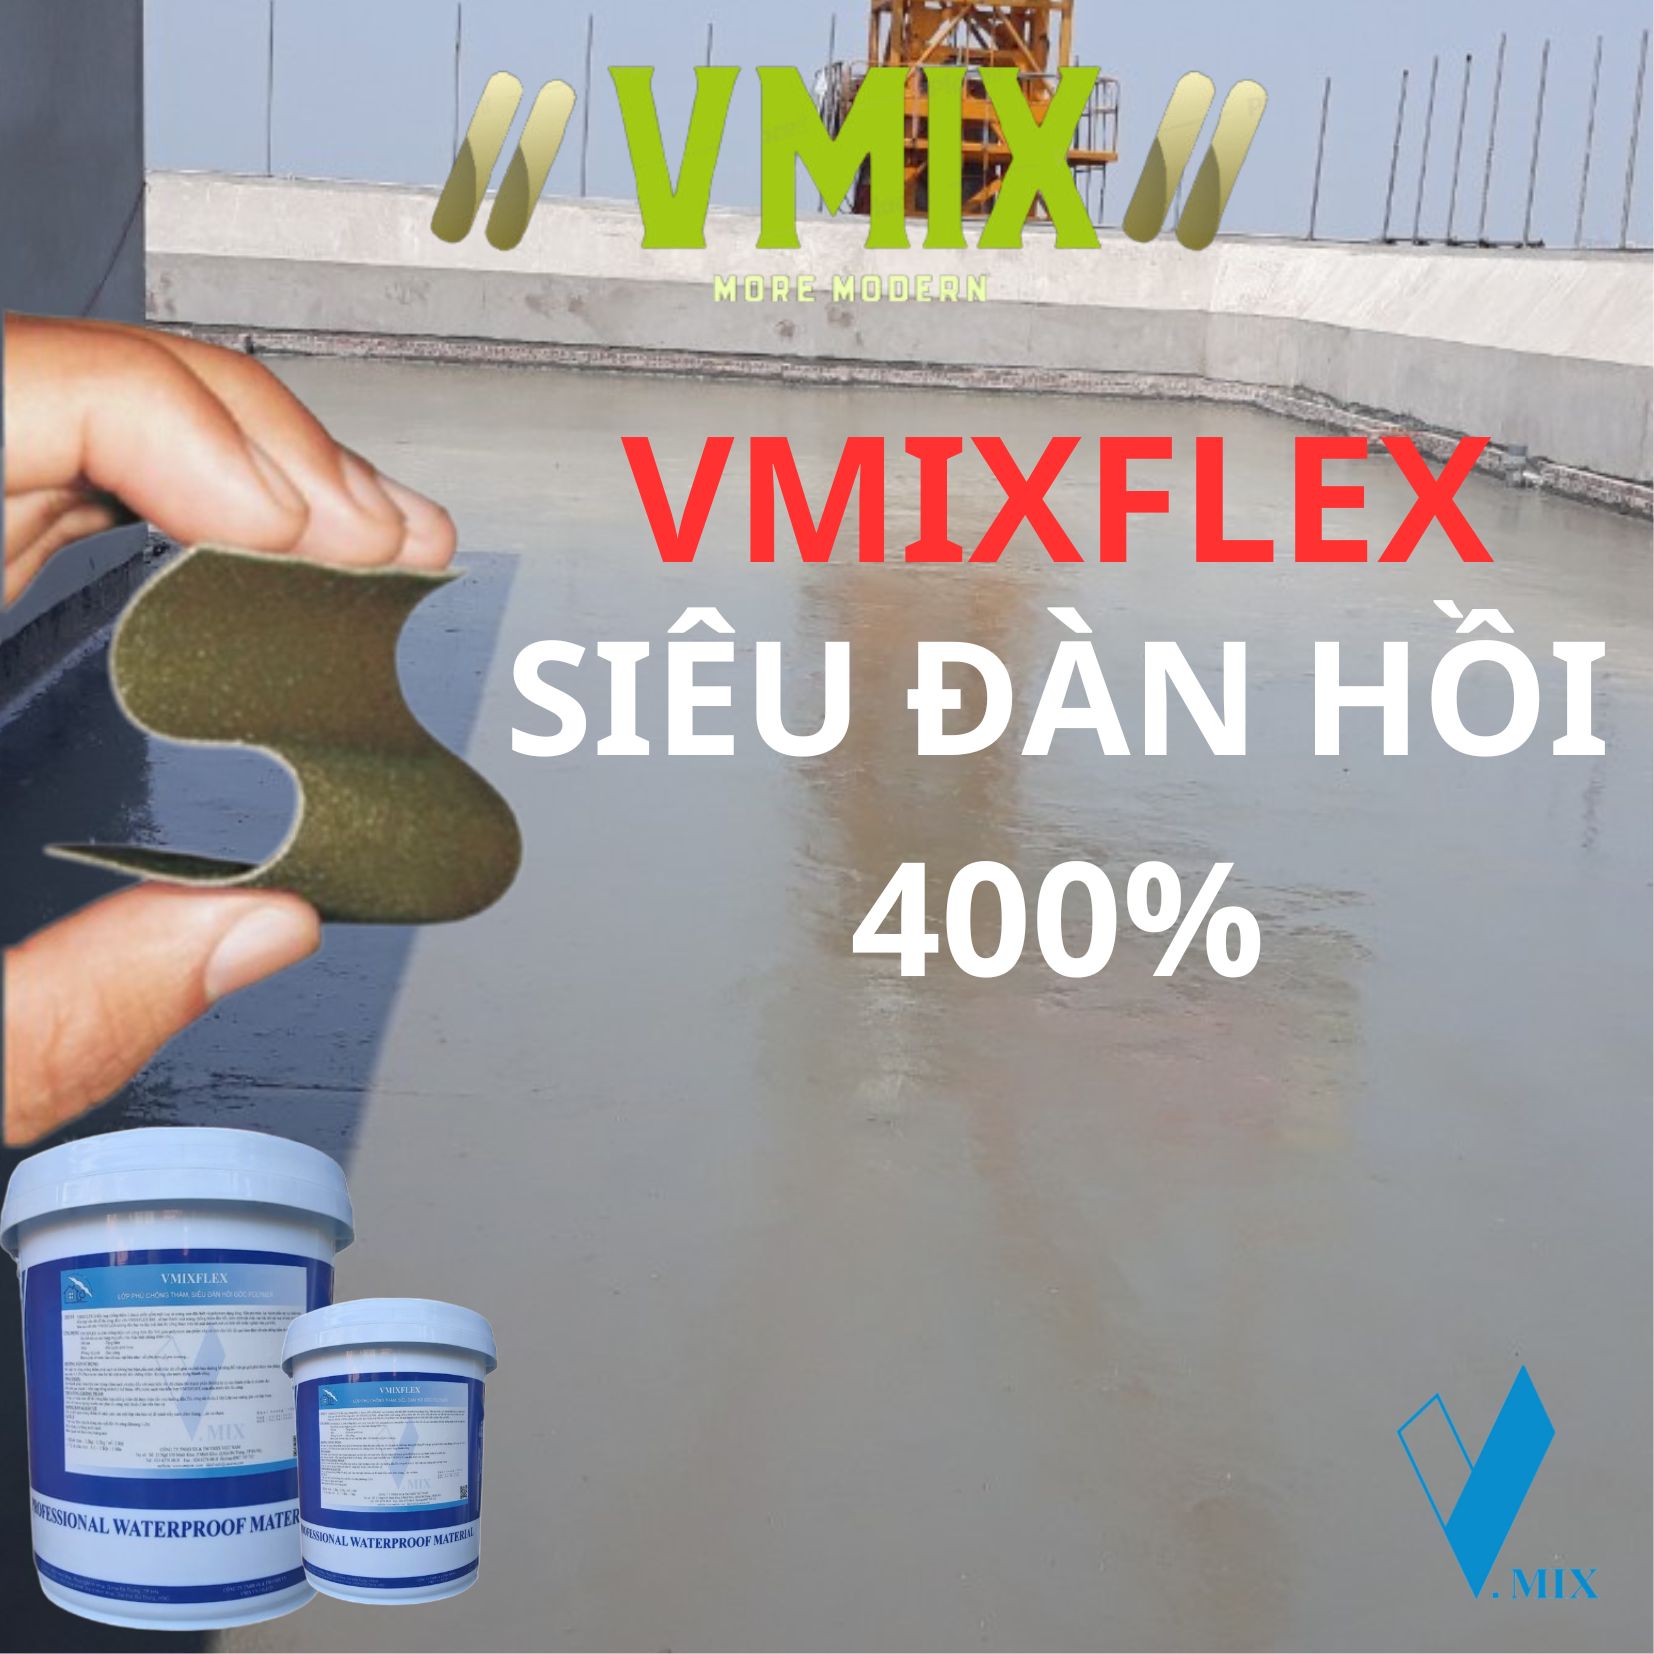 [5kg] Chống thấm không độc hại dùng cho bể cá koi,bể nước sinh hoạt ,cho bể bơi,sàn mái,ban công,tường ngoài nhà,nhà vệ sinh,dễ dàng thi công ,độ đàn hồi cao ,VMIXFLEX.VMIX ECO